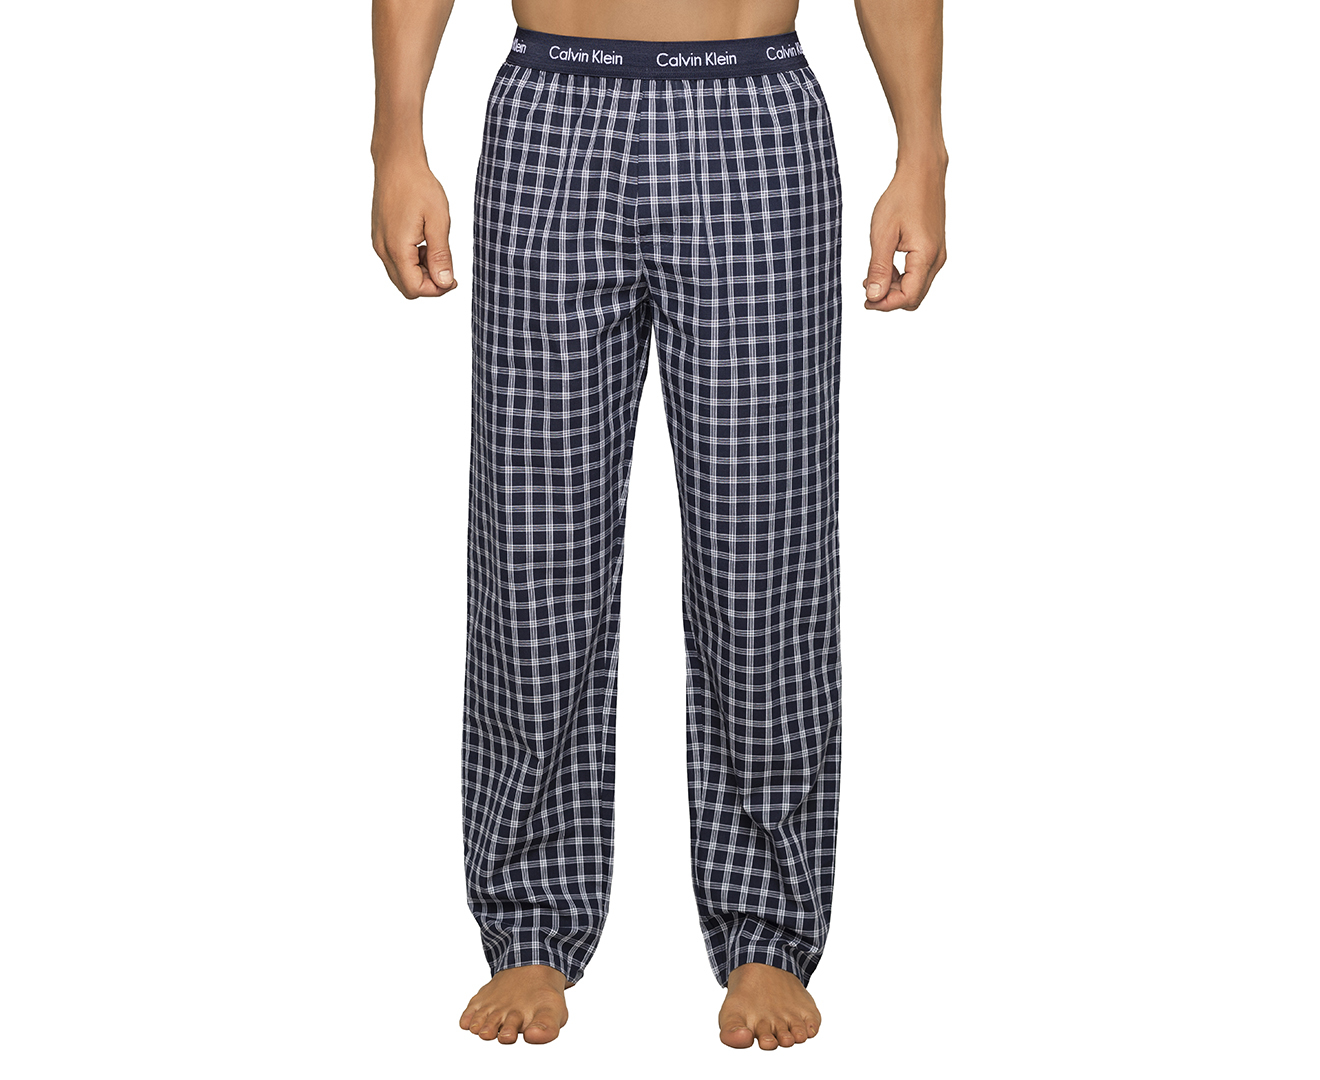 Calvin Klein Men's Woven Sleep Pant - Navy Check | Catch.co.nz